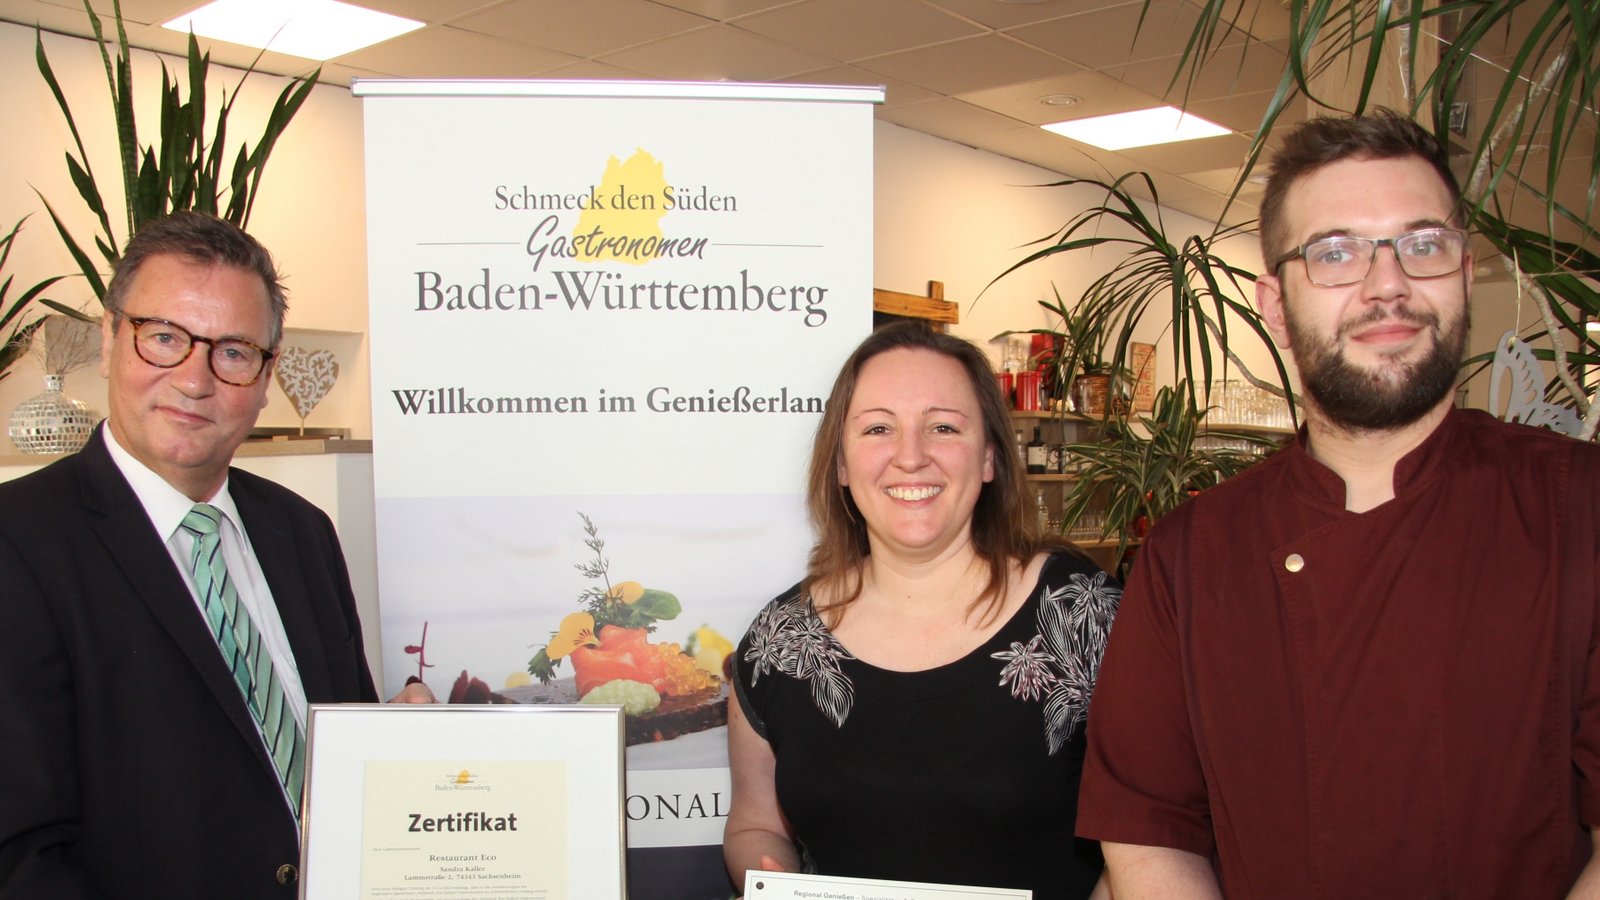 Sandra und Manuel Kaller (Restaurant Eco) freuen sich über die Zertifizierung. Minister Peter Hauk (links) überreicht die Urkunde.  Fotos: Banholzer